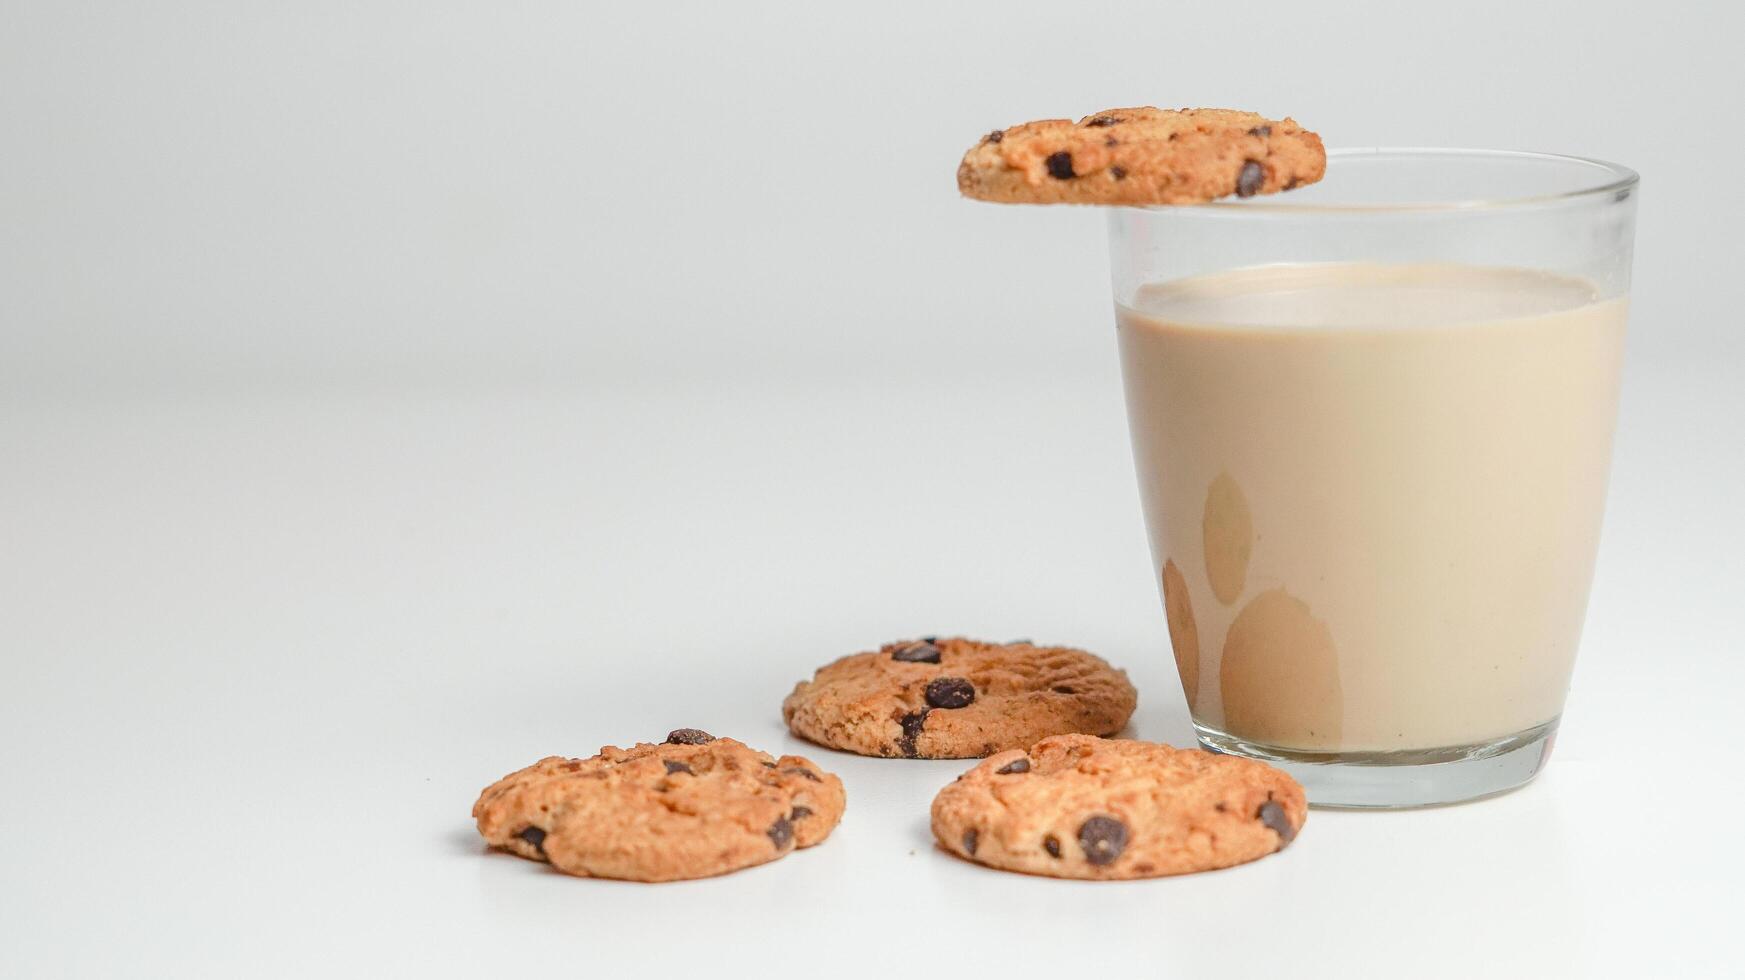 chocolate lasca biscoitos e uma vidro do leite café em uma branco fundo foto